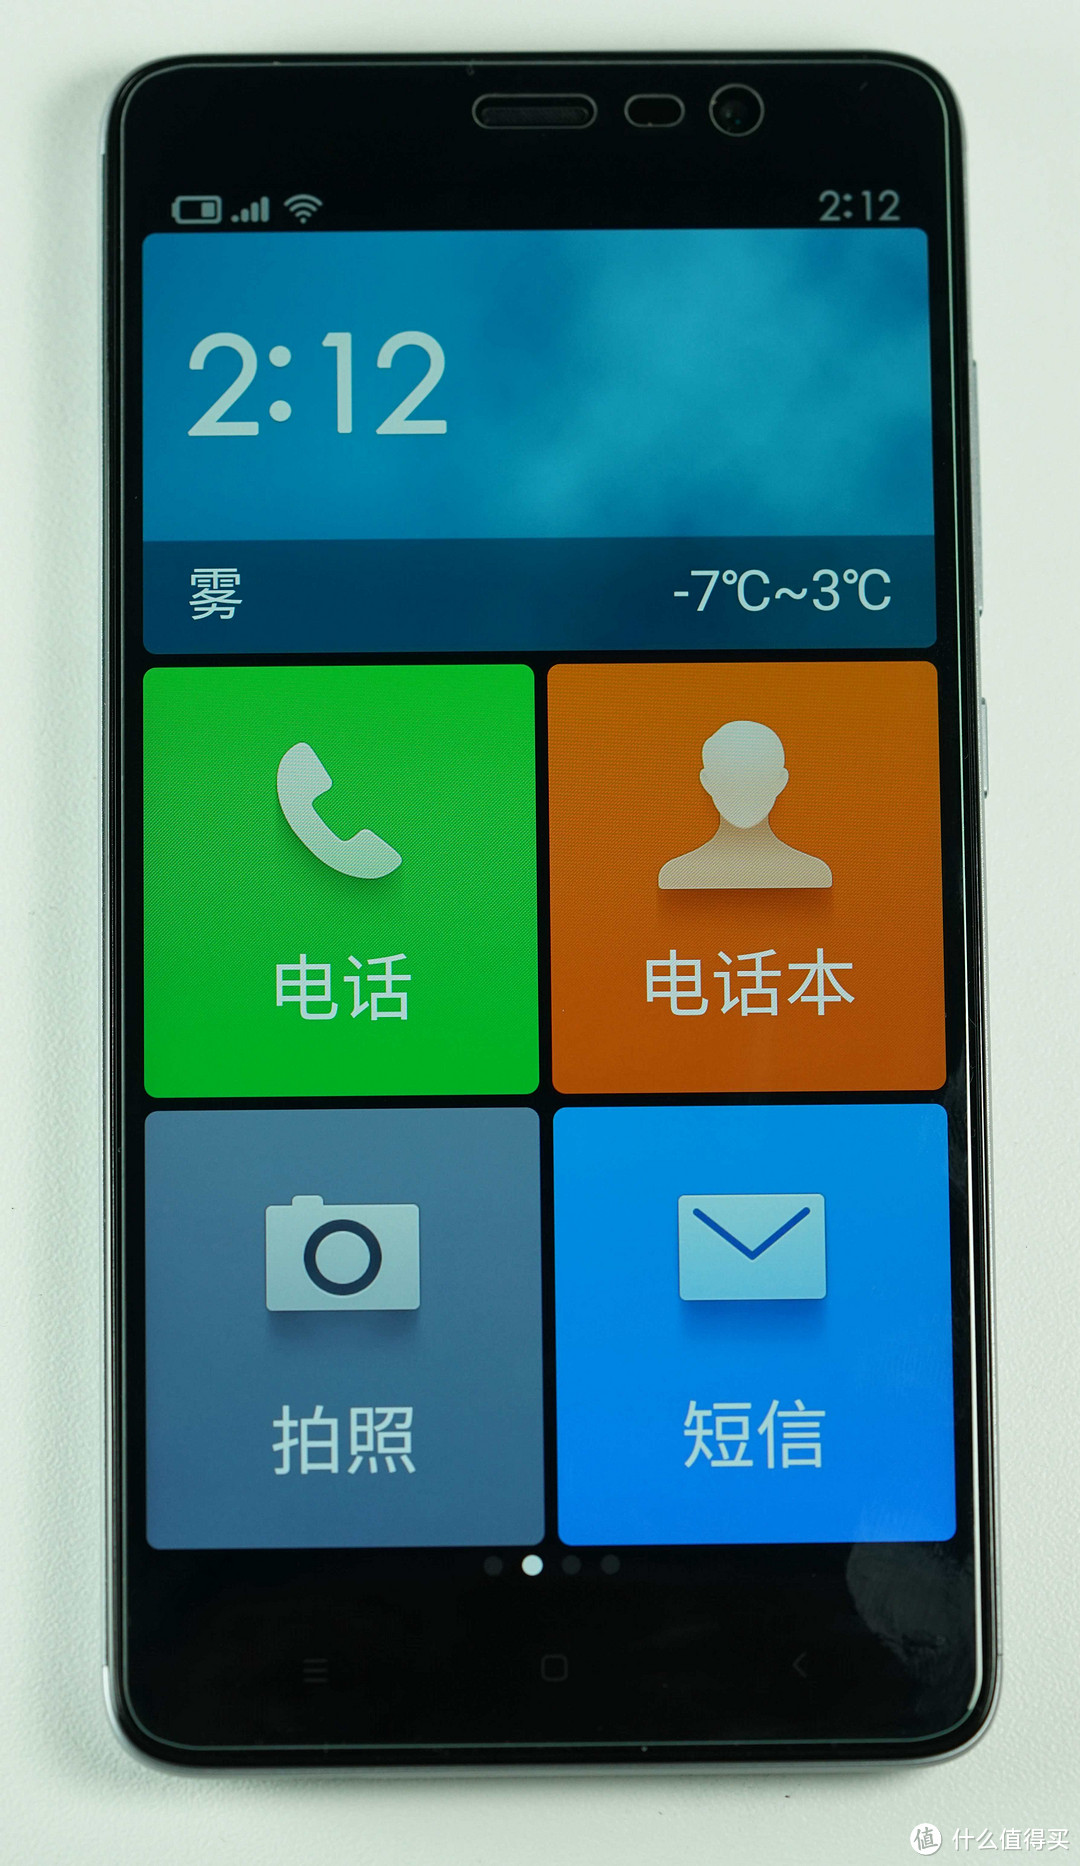 简约的老人手机 — MI 小米 红米Note 3 智能手机